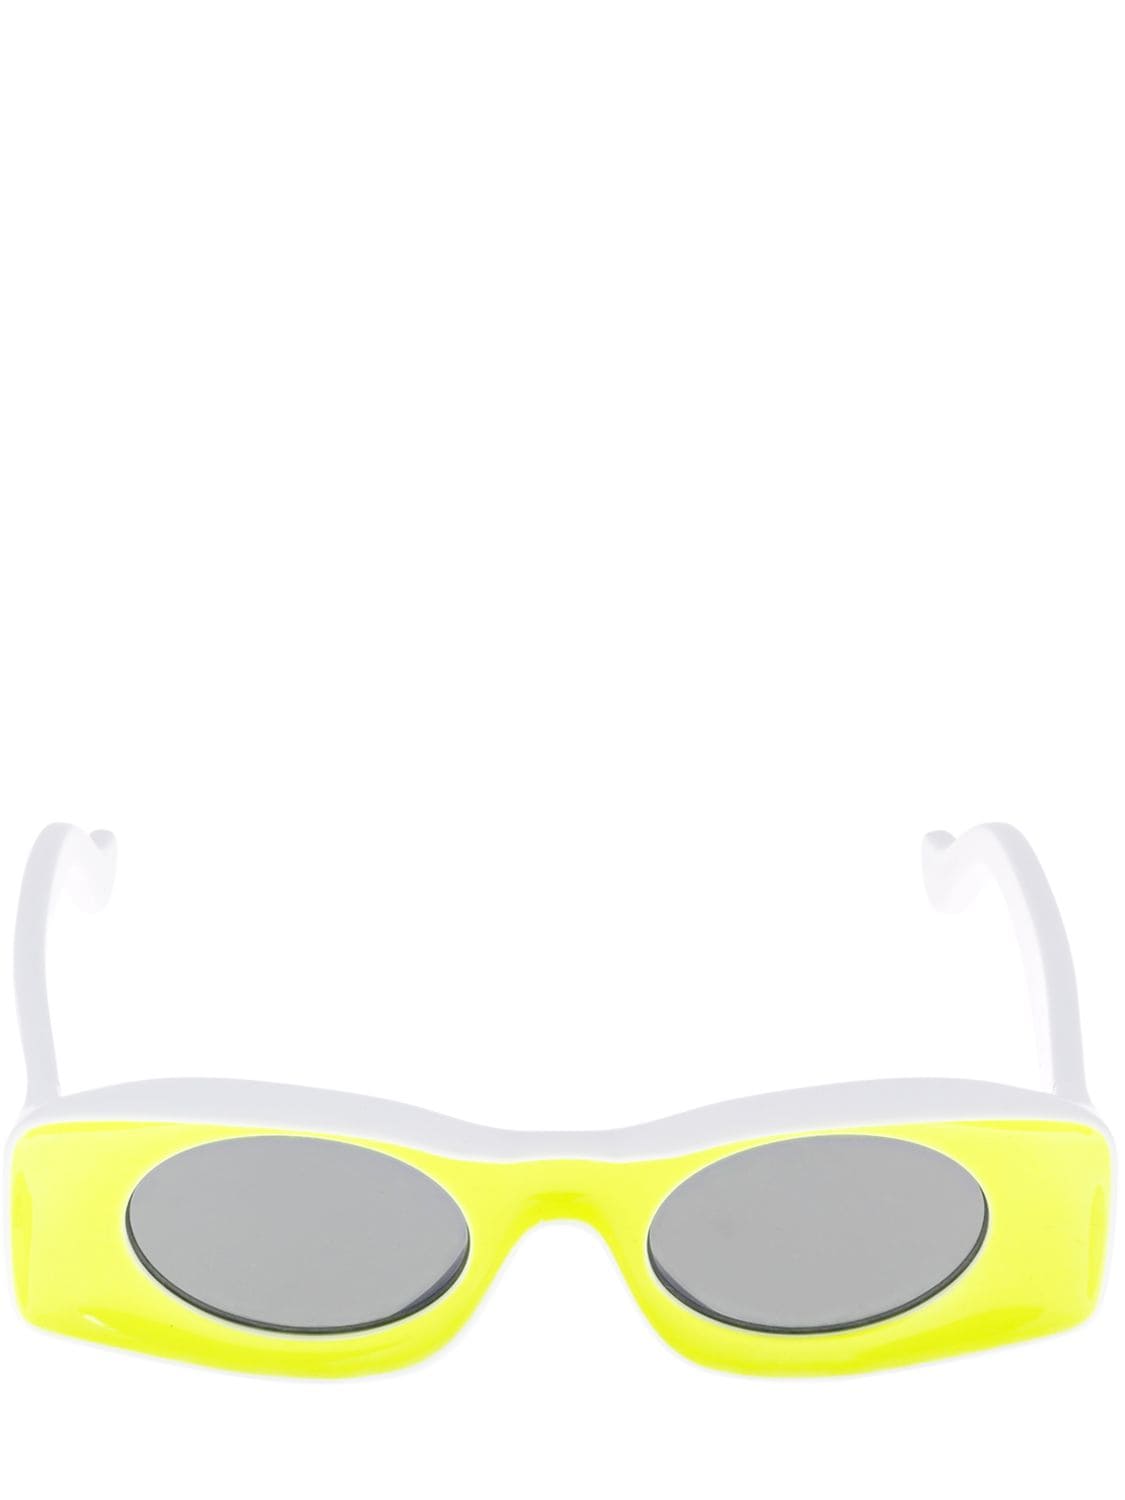 Loewe Paula's Ibiza Original Acetate Sunglasse In Yellow,white